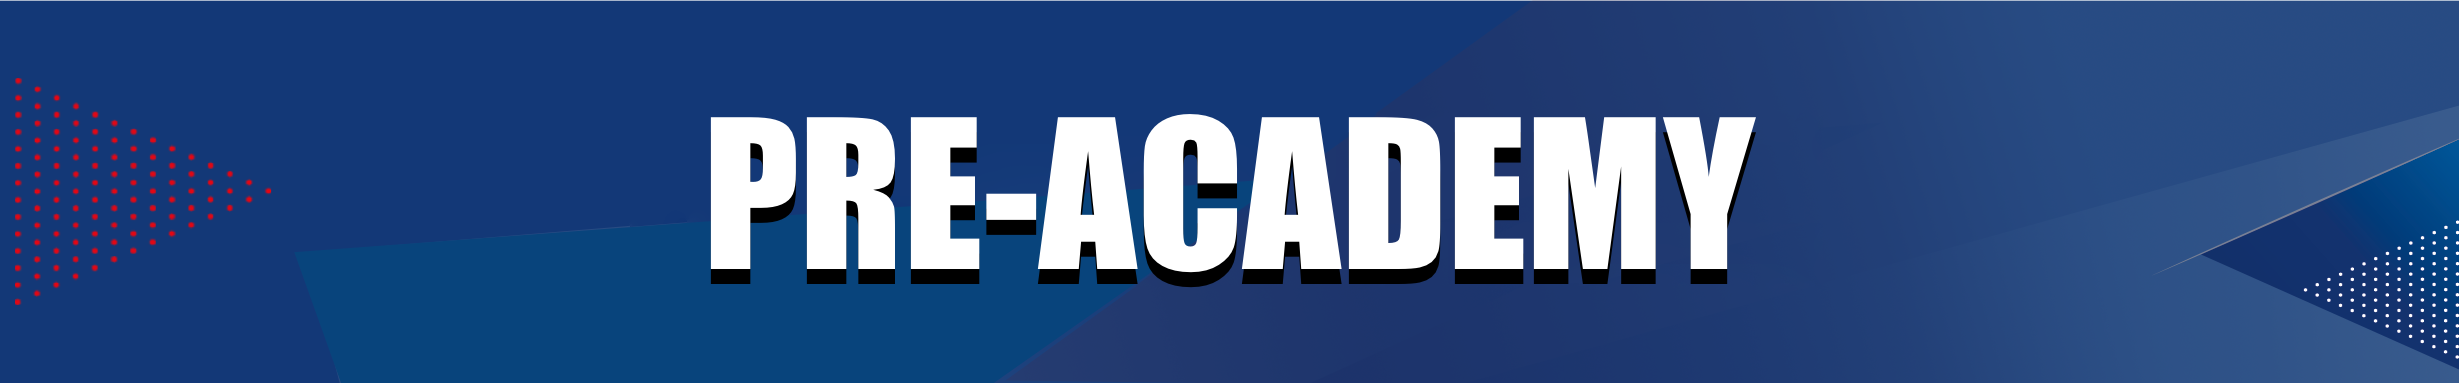 FFA - Header website pre academy